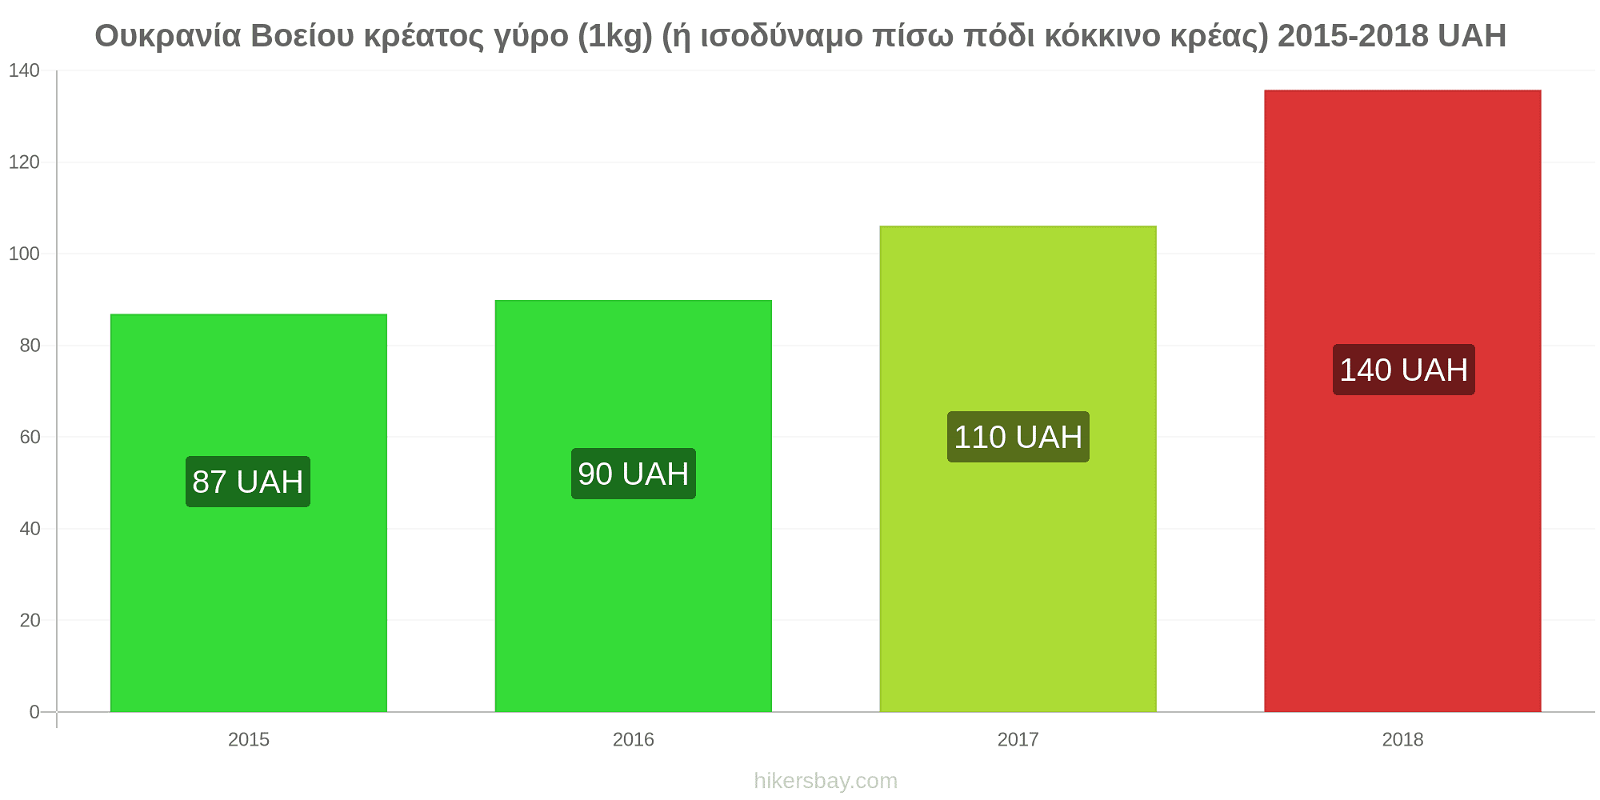 Ουκρανία αλλαγές τιμών Βοείου κρέατος γύρο (1kg) (ή ισοδύναμο πίσω πόδι κόκκινο κρέας) hikersbay.com